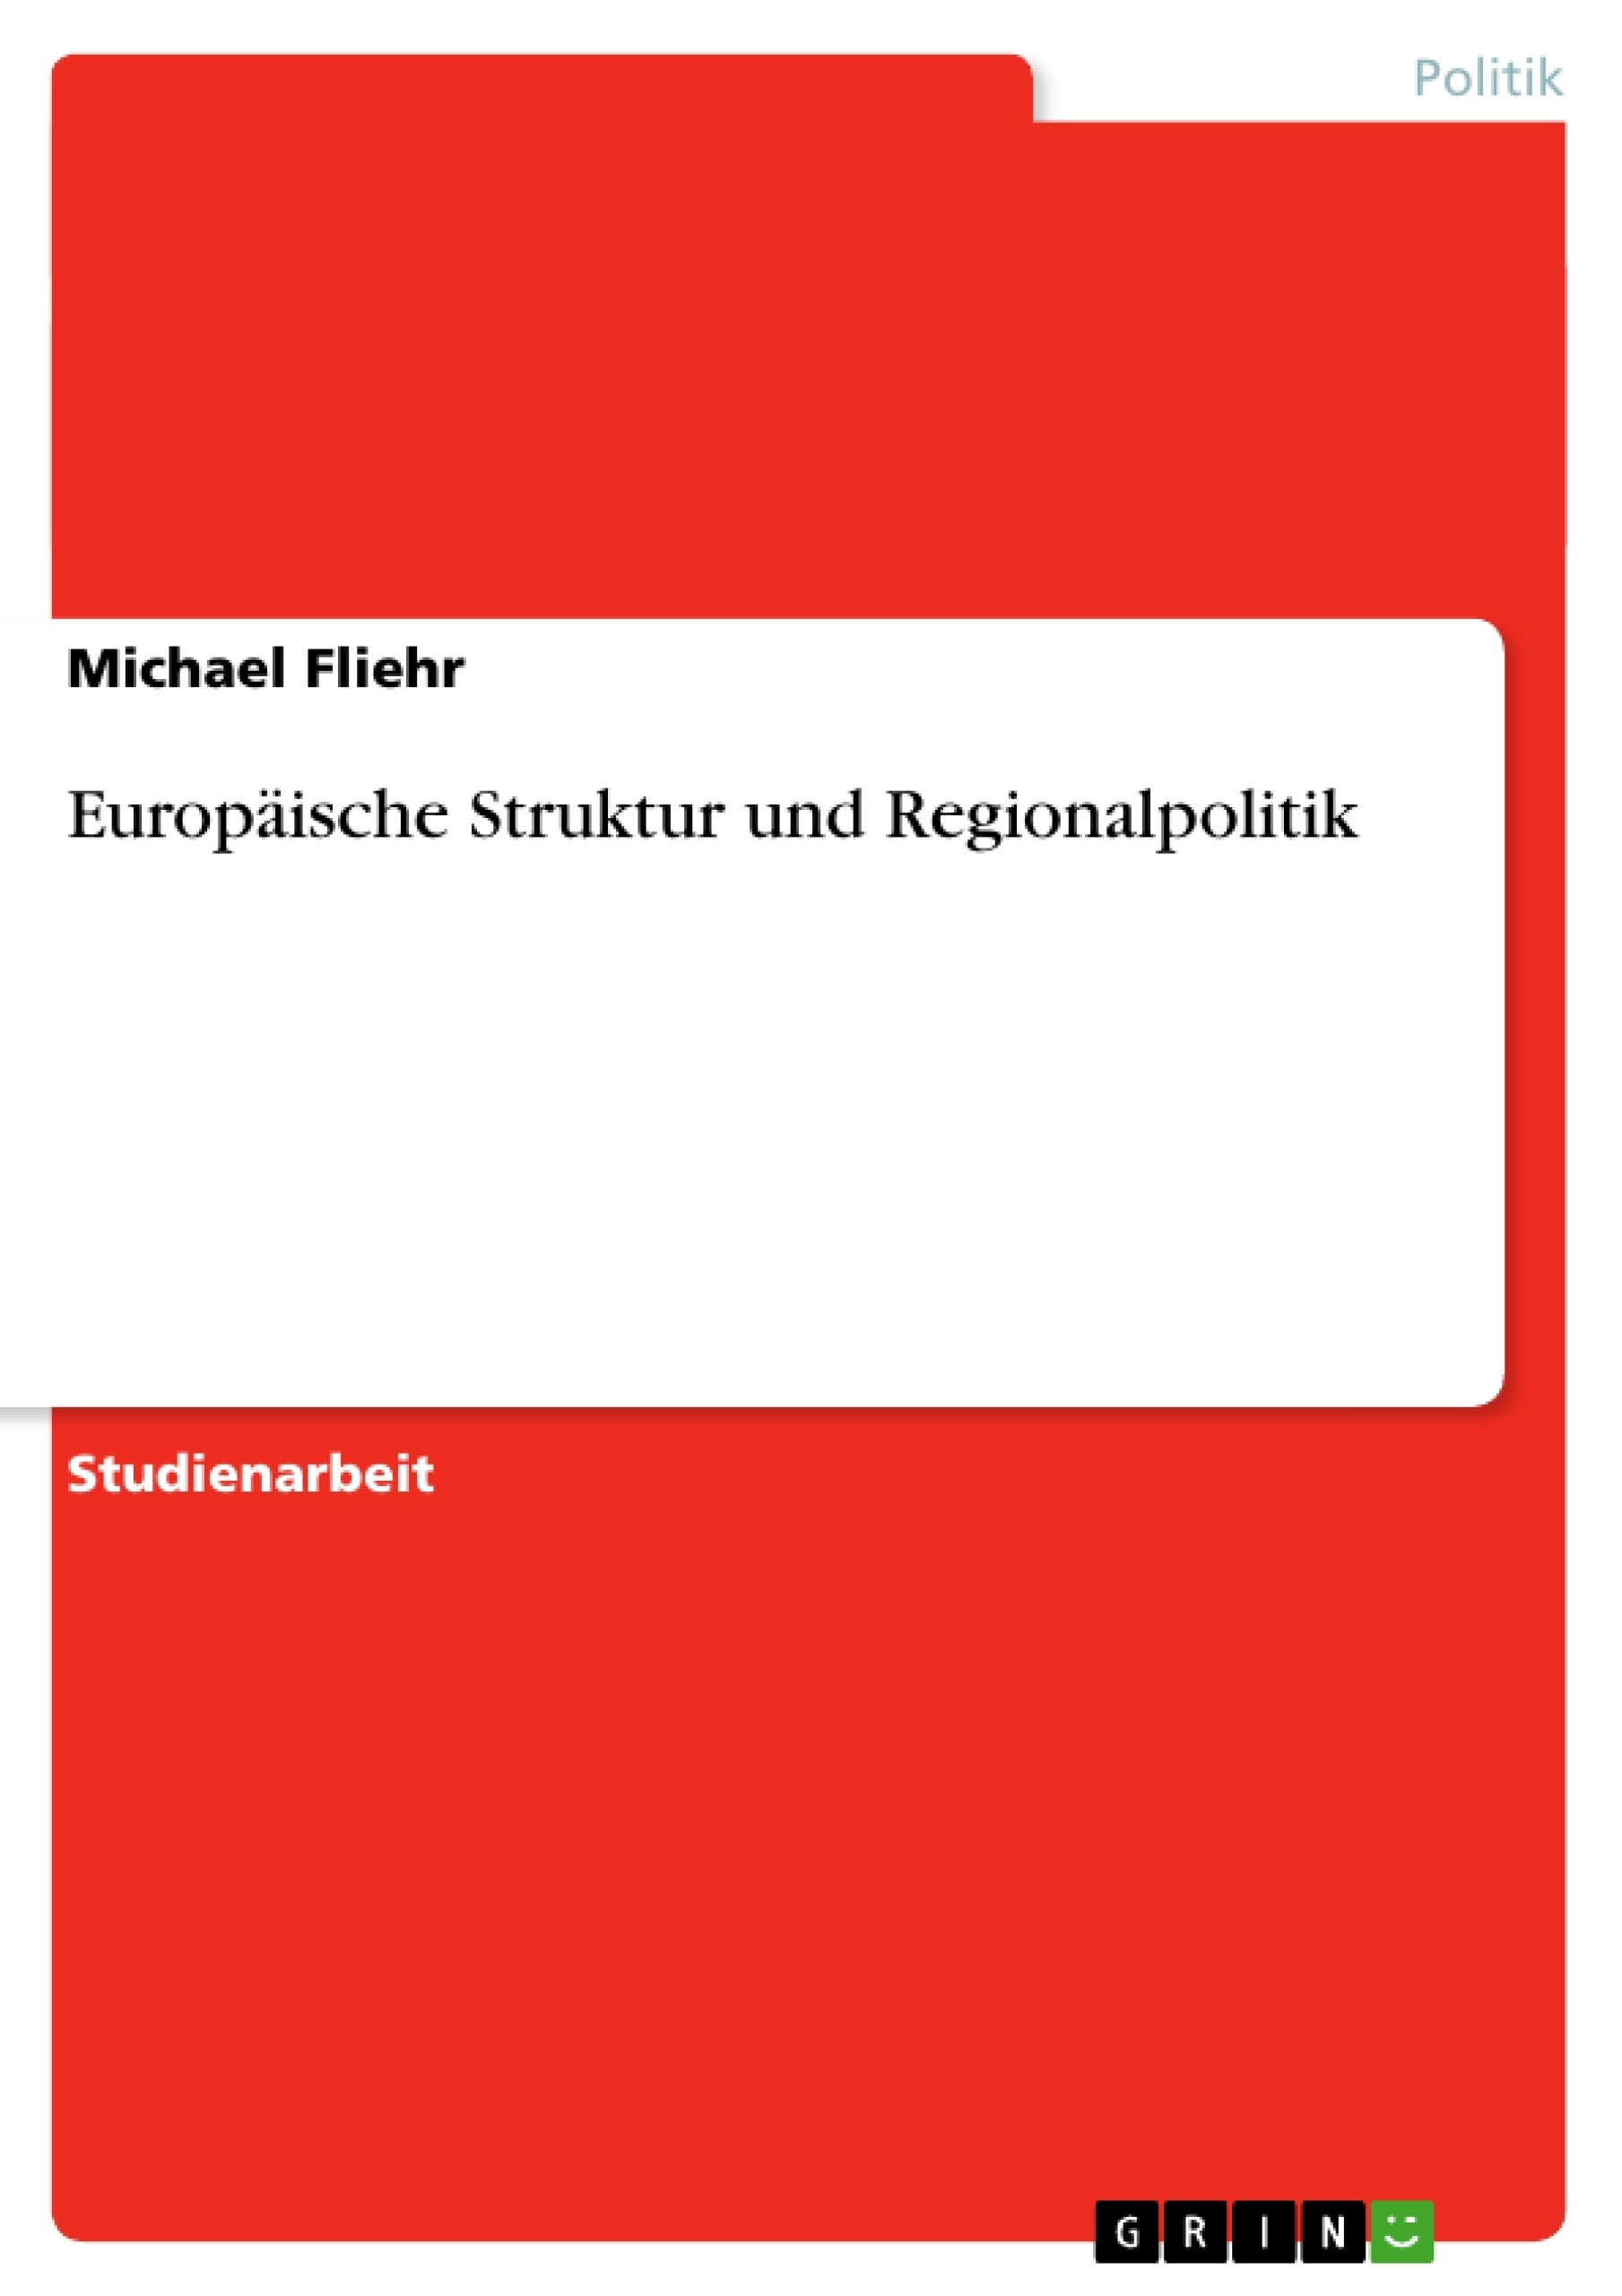 Title: Europäische Struktur und Regionalpolitik